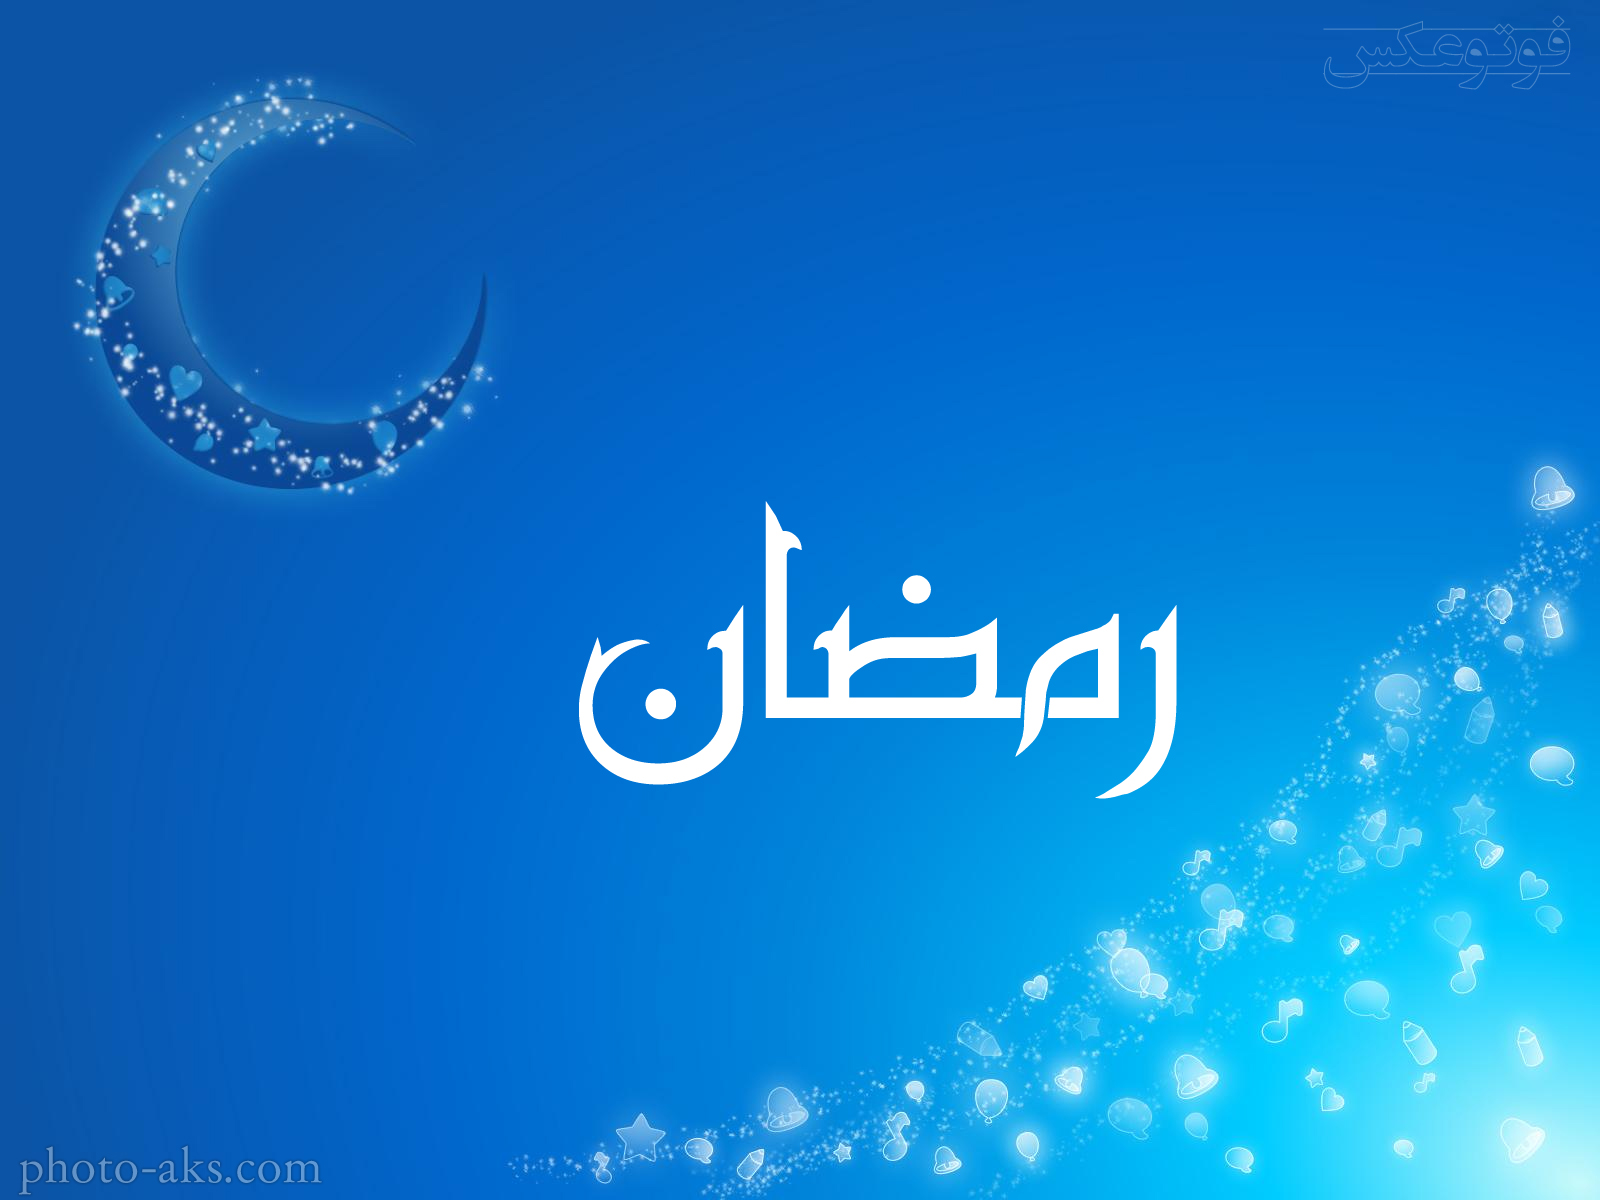 1495821770wallpaper-ramadan.jpg